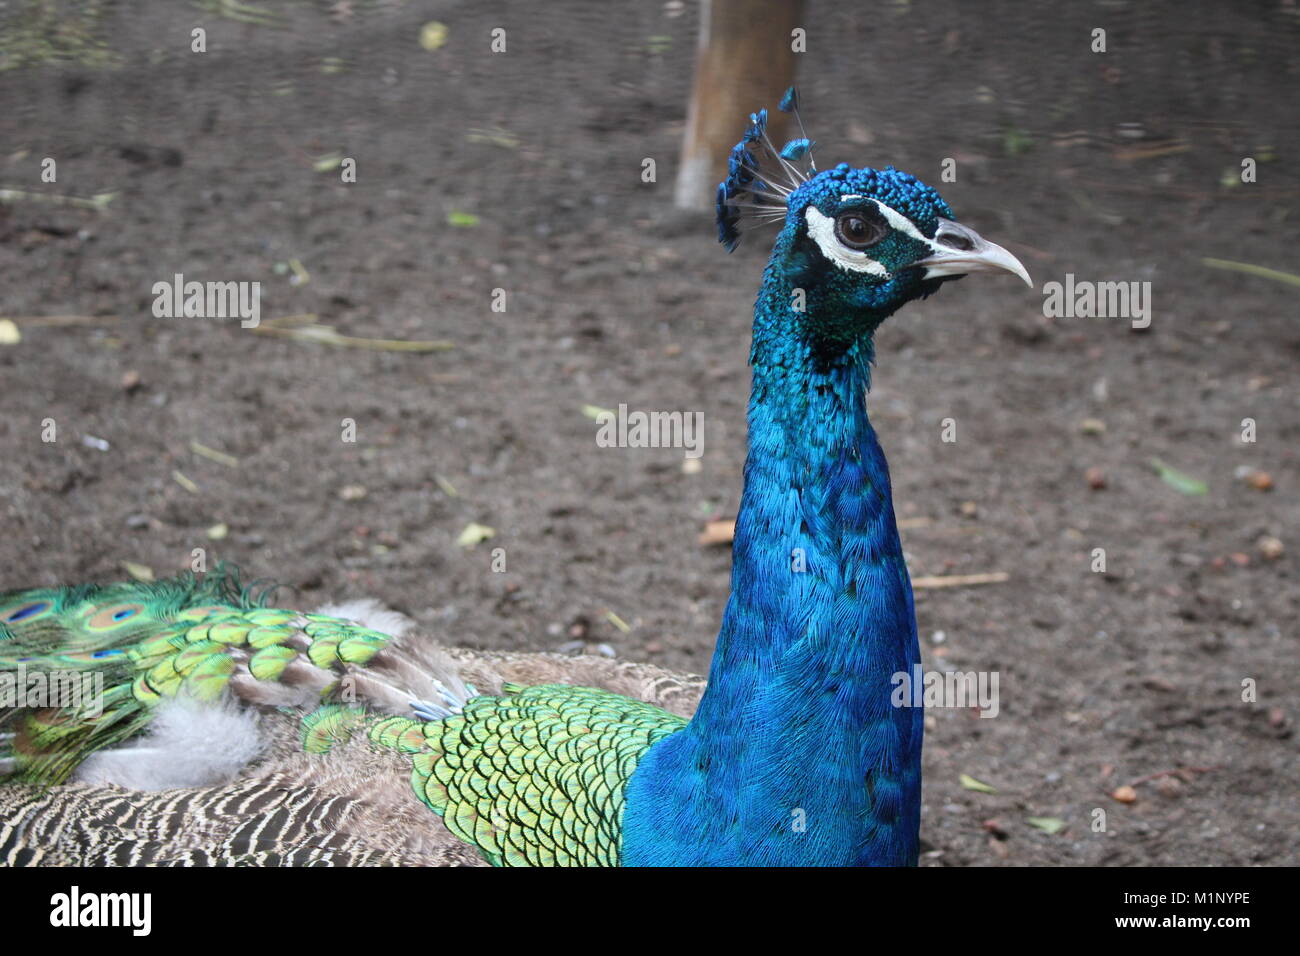 Einige Bilder von Tieren in einem Zoo Stockfoto